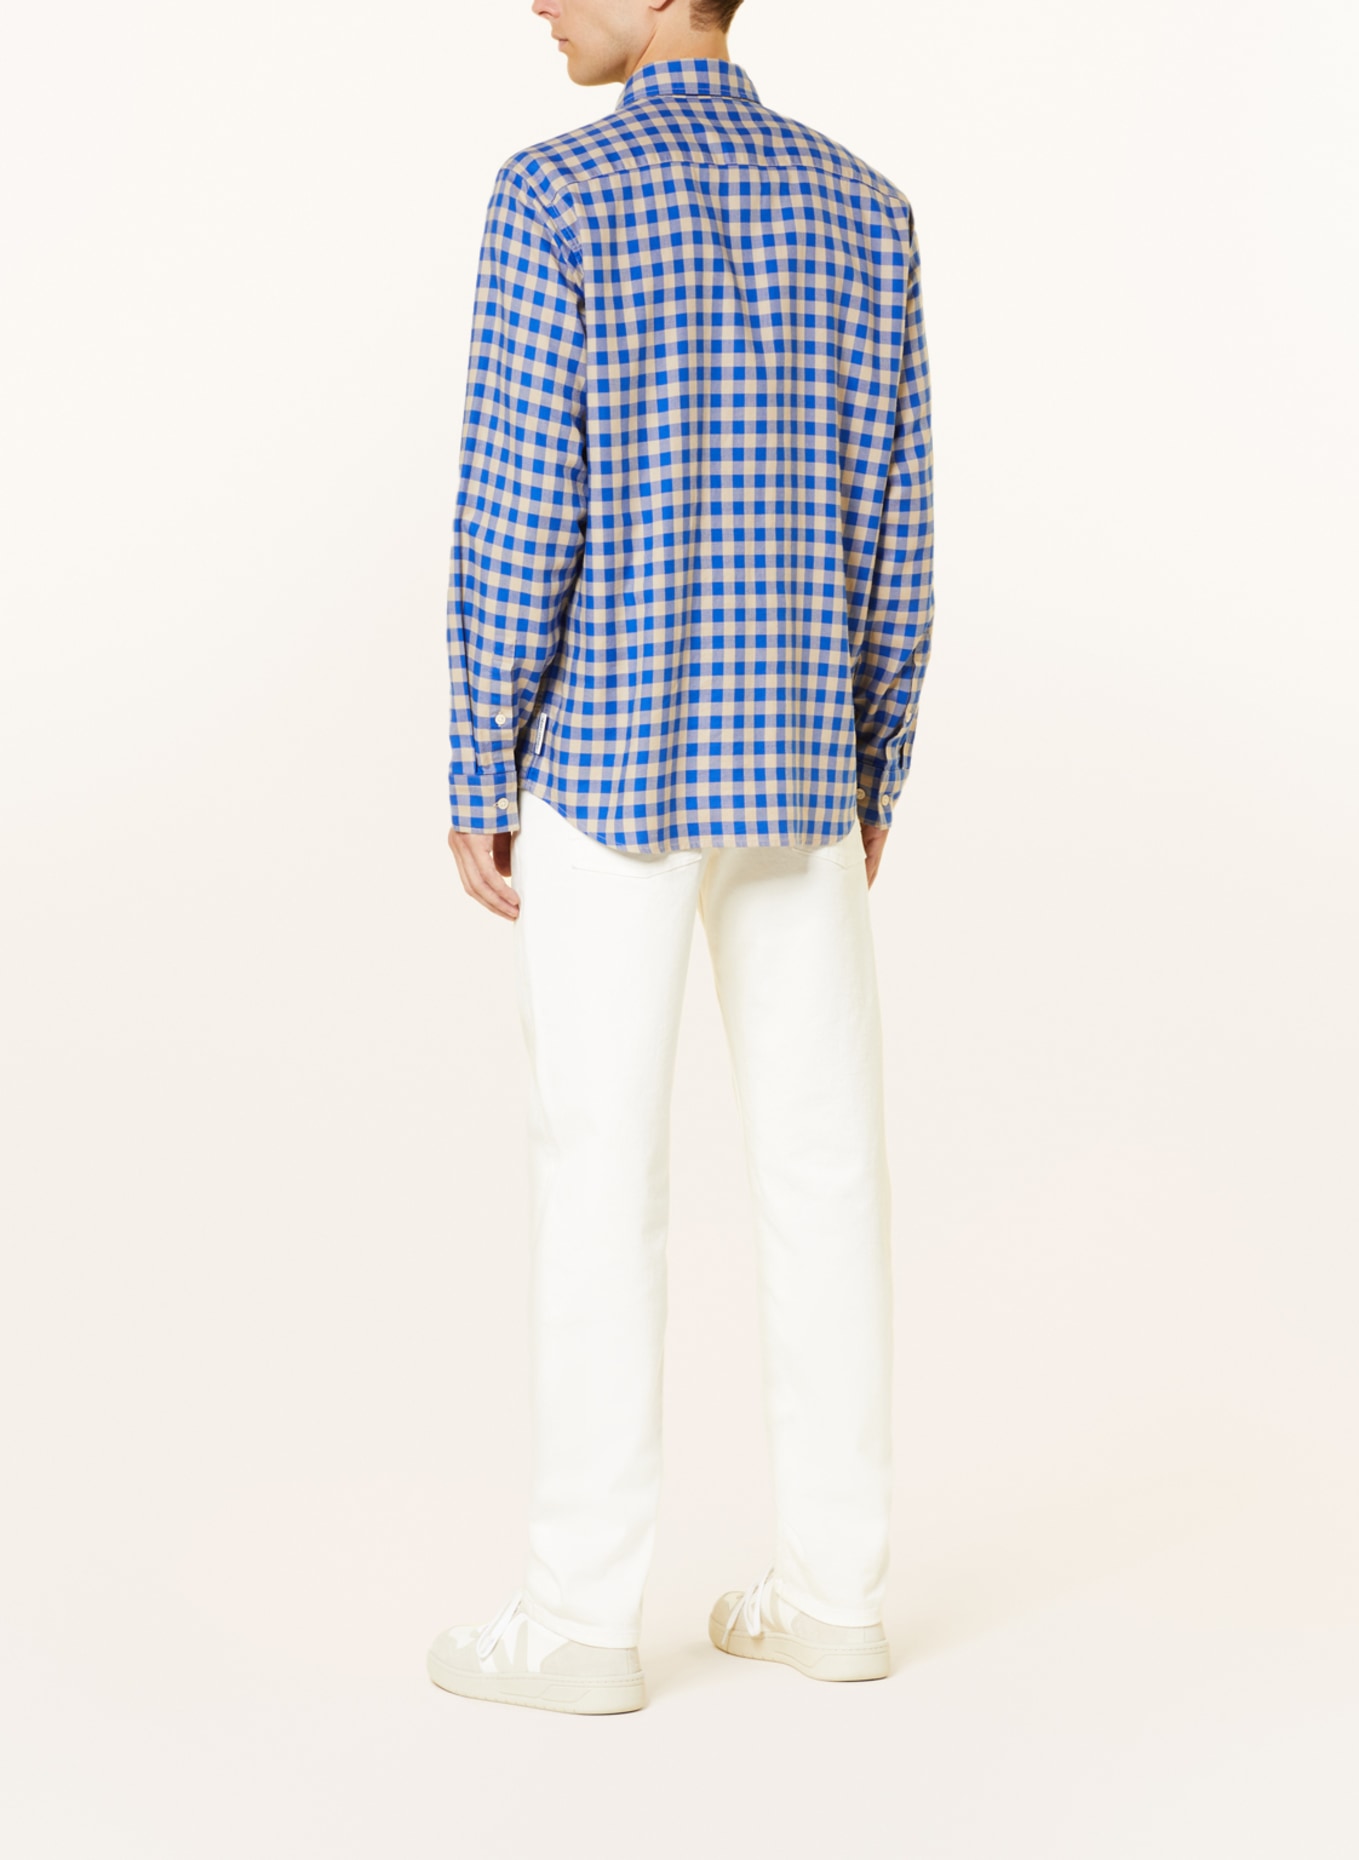 Marc O'Polo Shirt regular fit, Color: BLUE/ CREAM (Image 3)